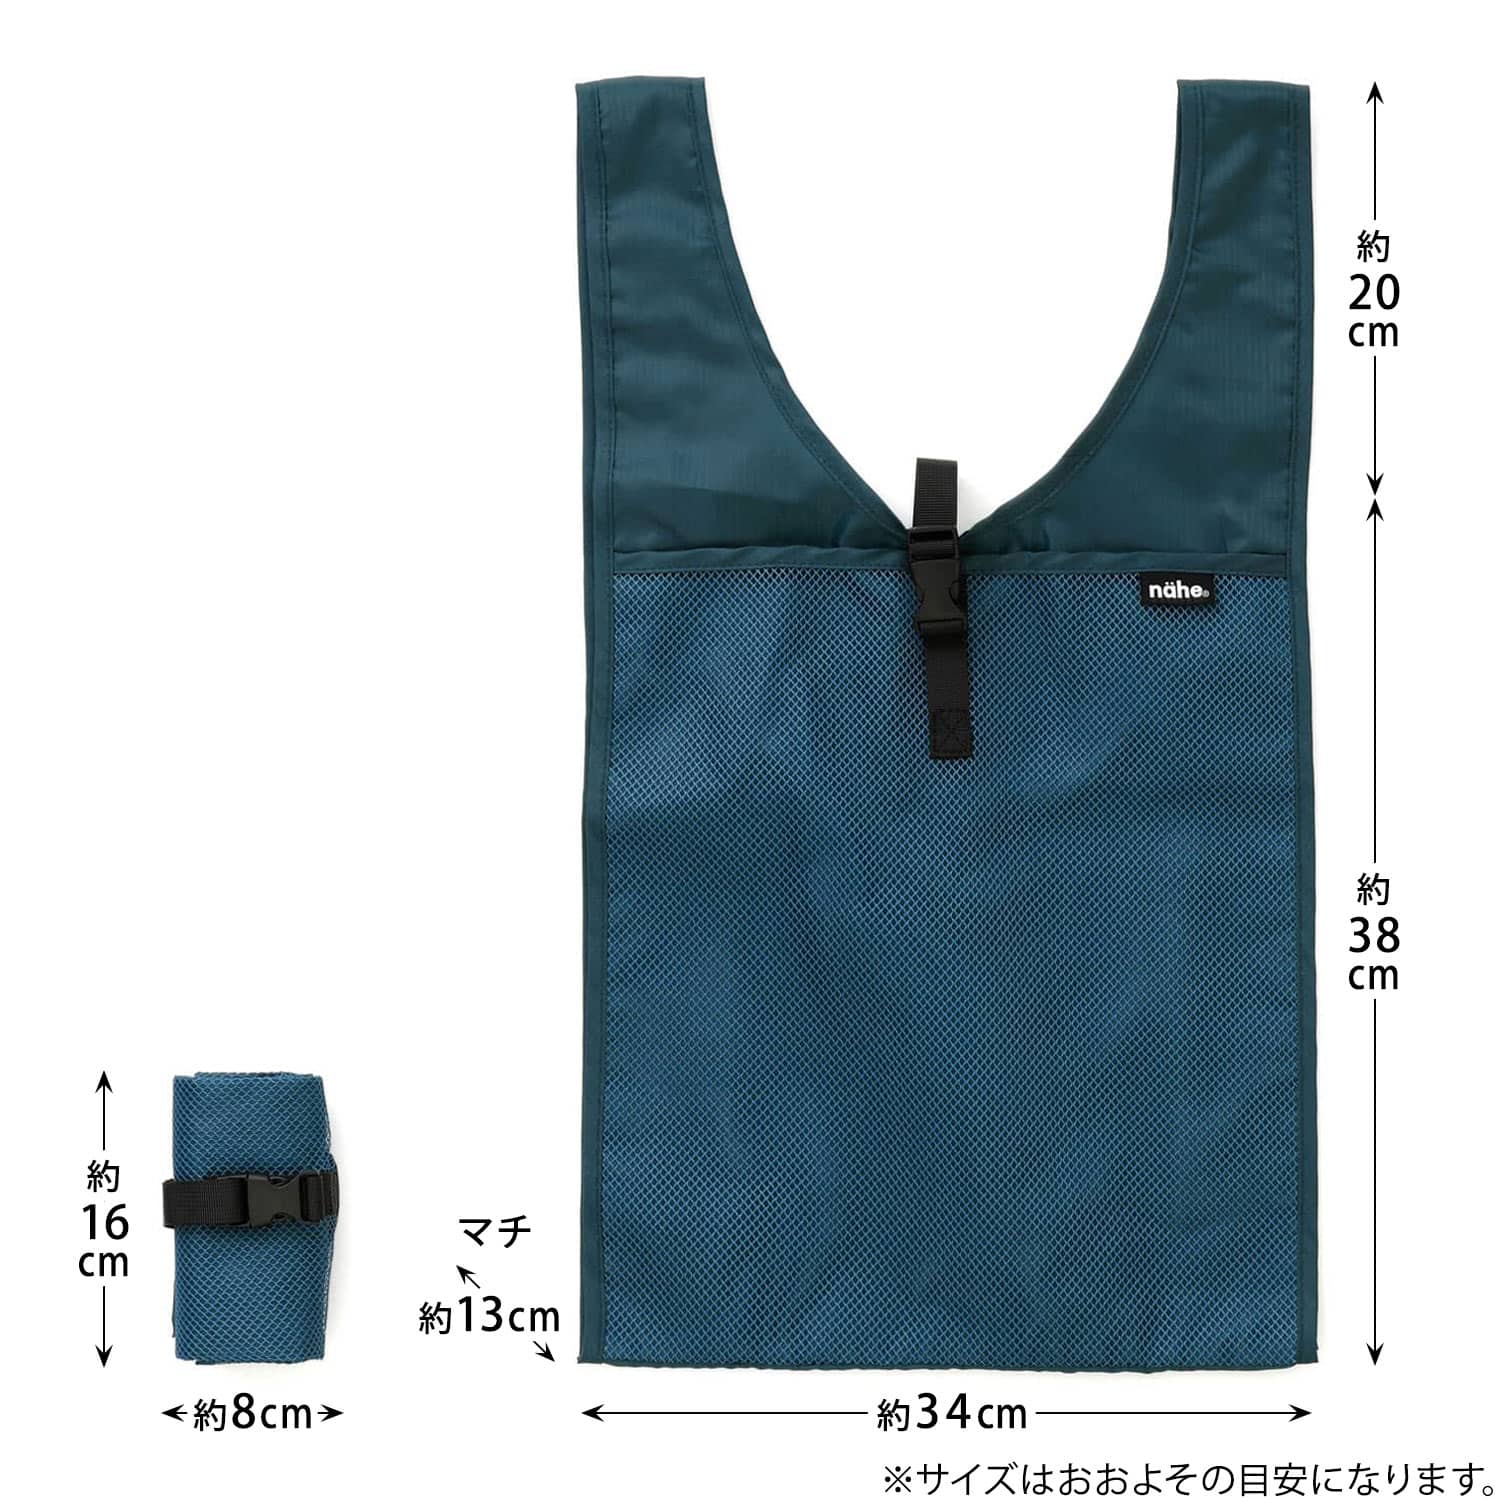  эко-сумка nahene-eshopa-M фирменный магазин ограничение maru she сумка складной compact плечо .. мужской путешествие обычно используя модный стиль 